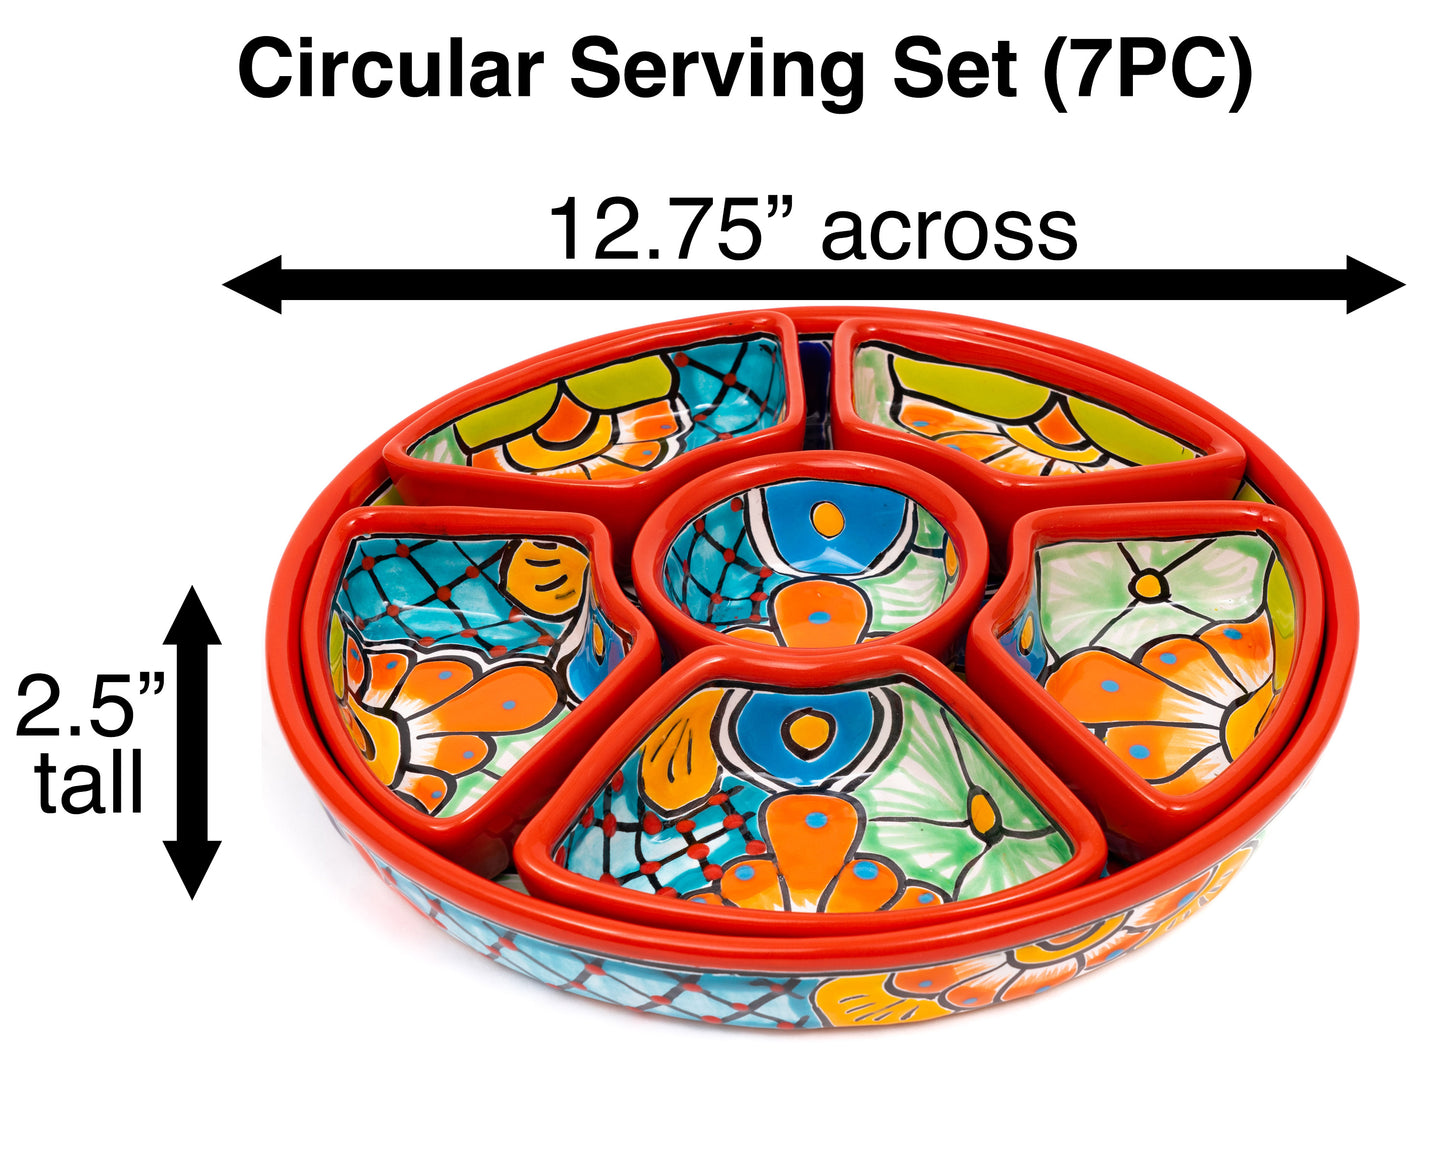 Circular Serving Set (7PC) - Red